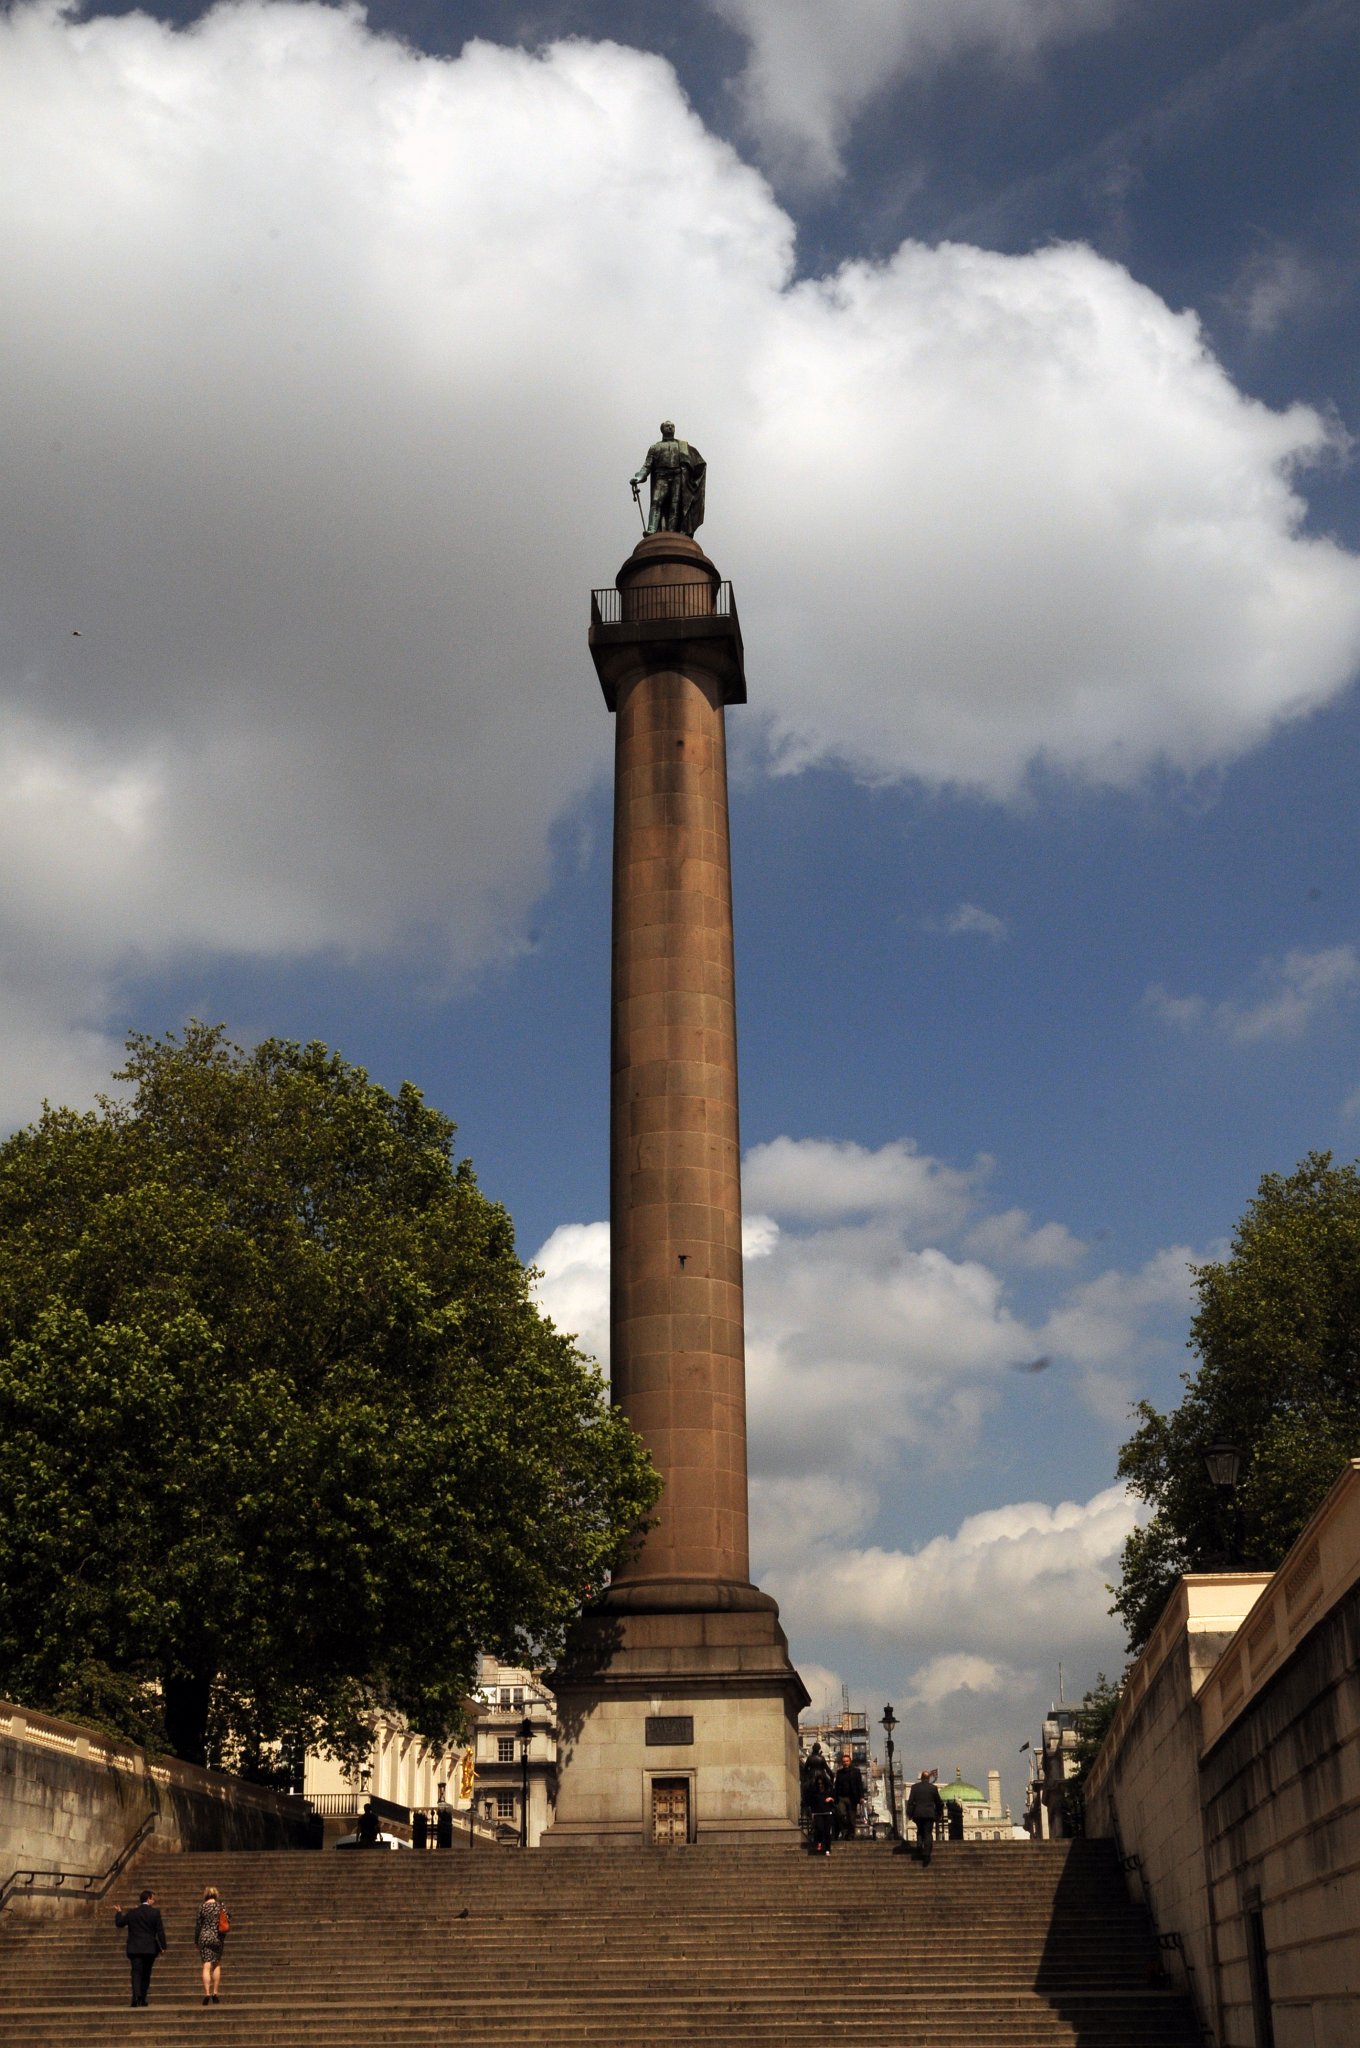 DSC_3834_1.jpg - Duke Of York Monument from The Mall. Prince Frederick, vévoda z Yorku byl druhý nejstarší syn krále do schopné modernizované síly. Jiřího III, vrchní velitel britské armády během francouzských revolučních válek a vedl k reformě armády. Když v roce 1827 zemřel, celá britská armáda se vzdala jednodenního výdelku, aby mohl být postaven tento památník.